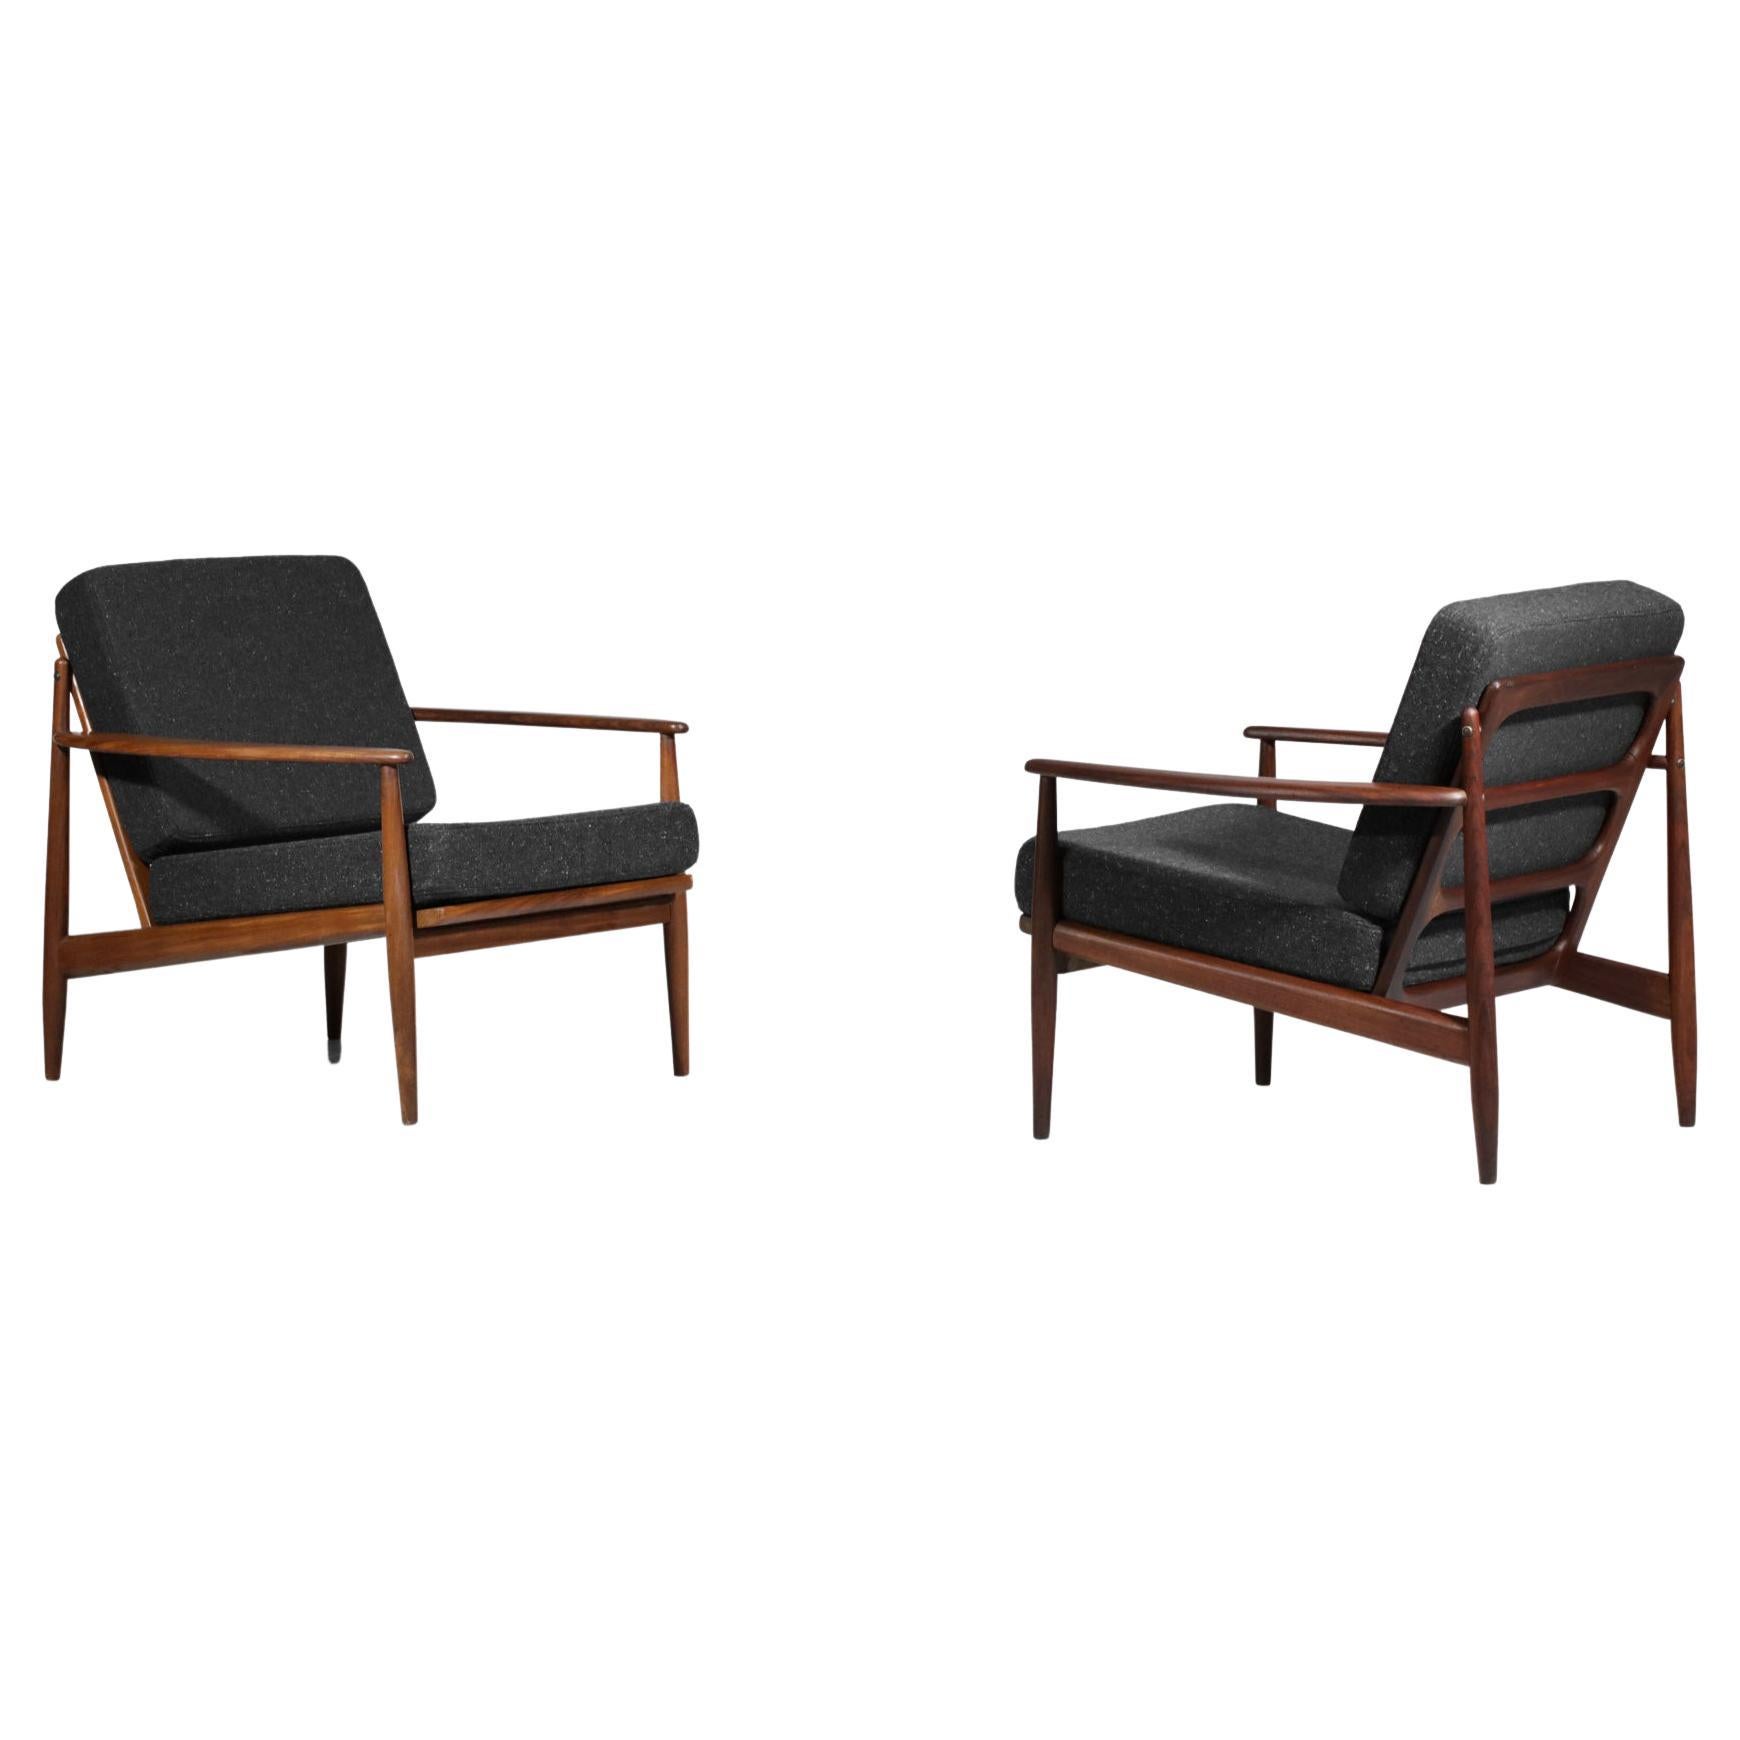 Pair of Armchairs Style of Grete Jalk Danish Scandinavian Teak Design 60's